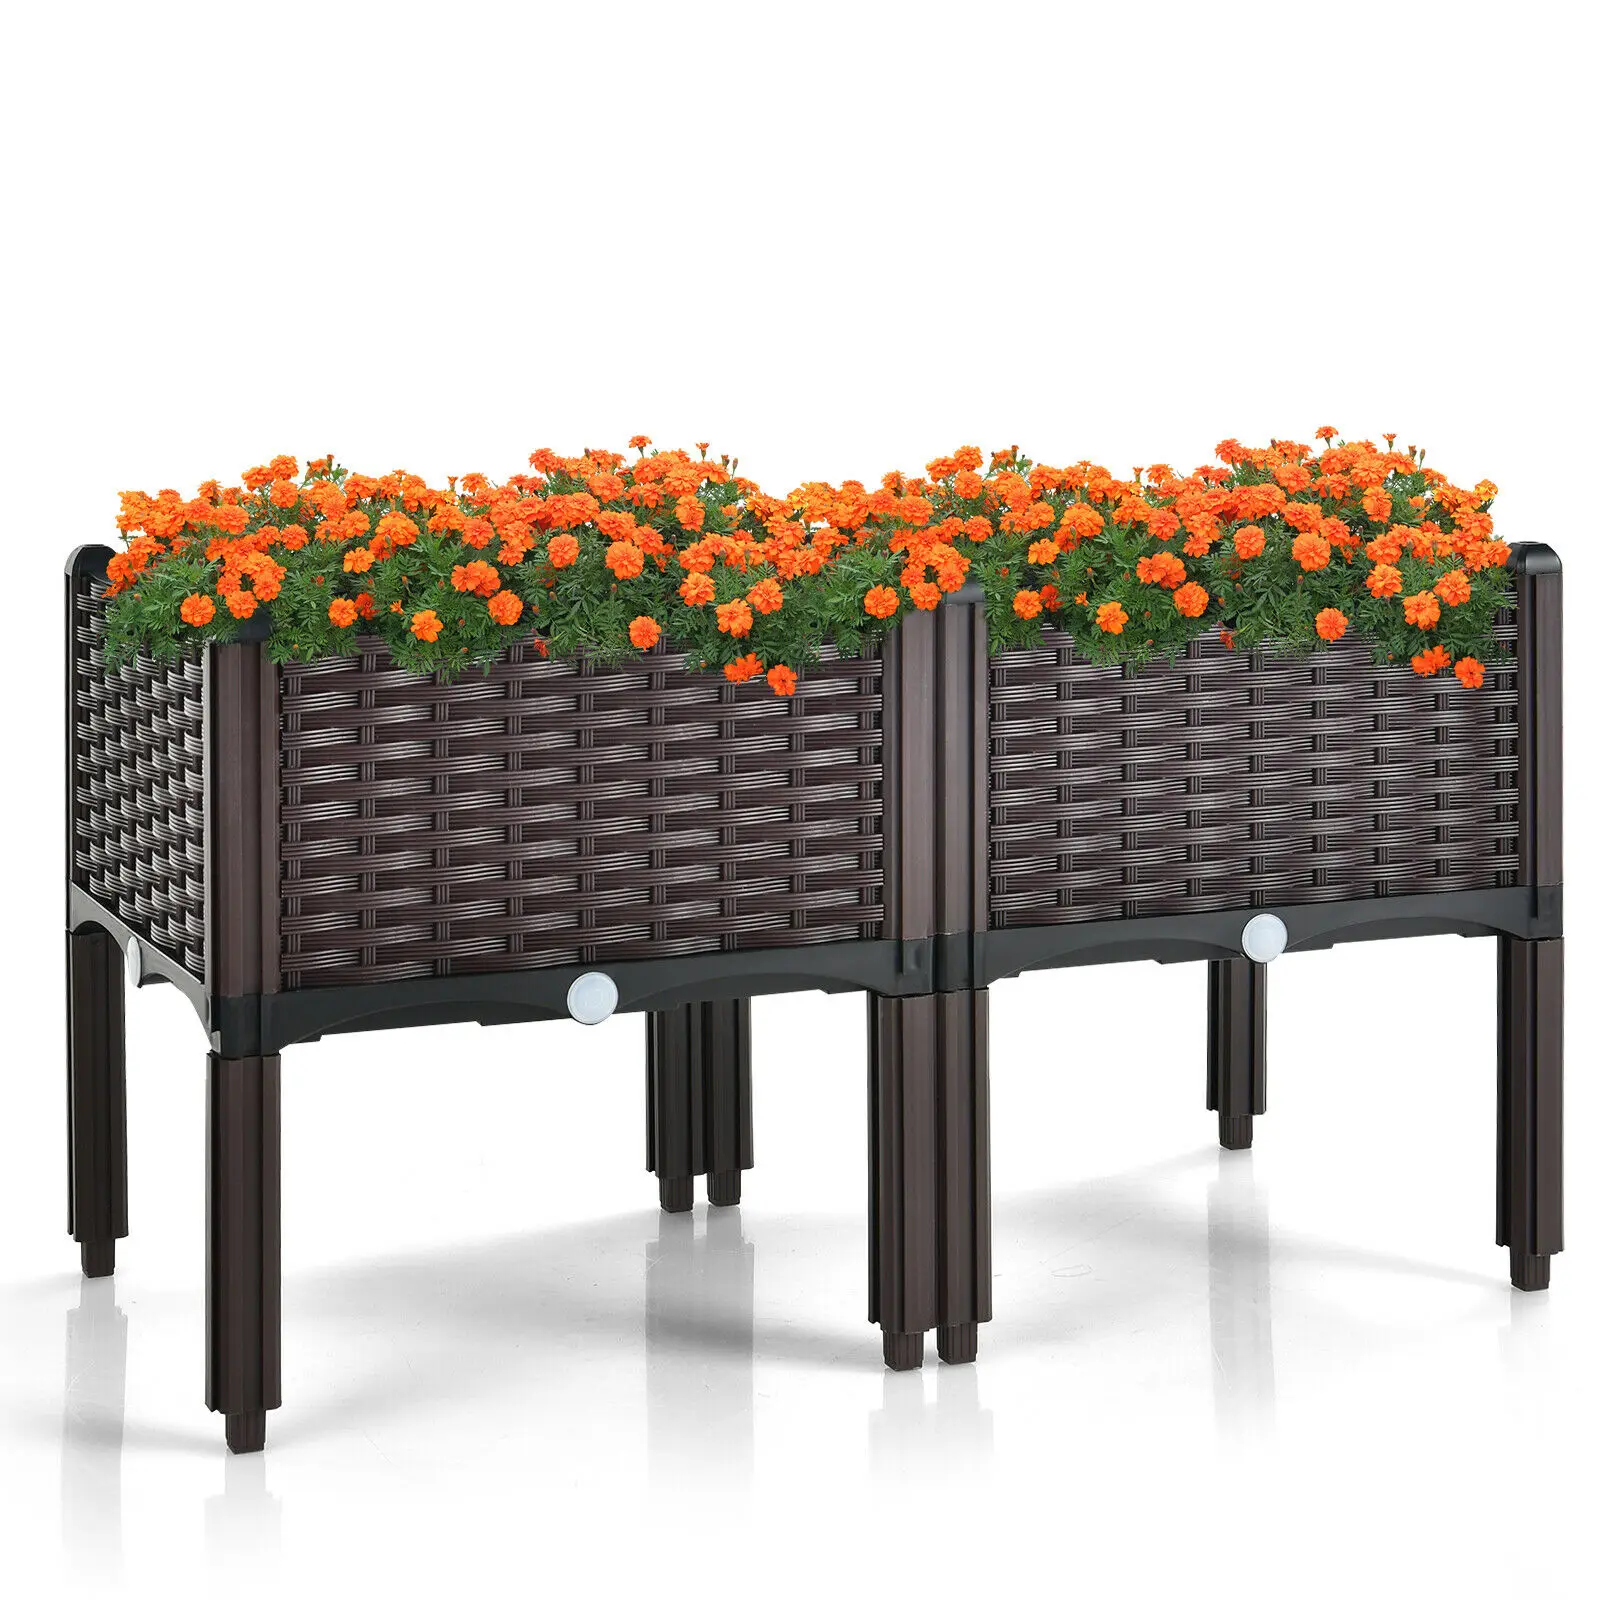 Elevated Plastic Raised Garden Bed Planter Kit for Flower Vegetable Grow 2 Set  GT3742BN